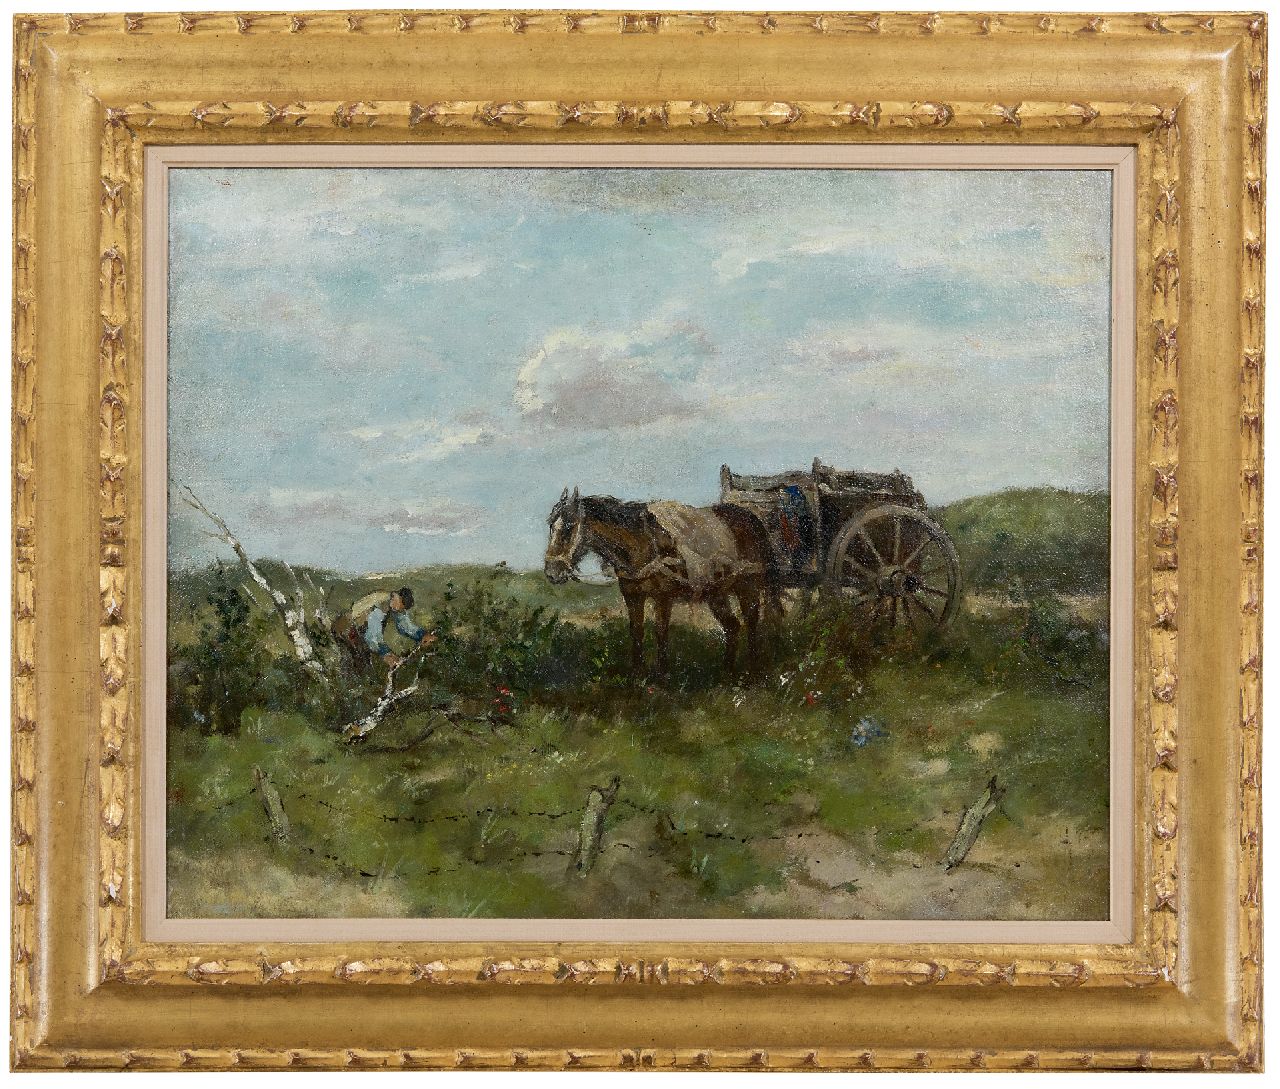 Scherrewitz J.F.C.  | Johan Frederik Cornelis Scherrewitz | Paintings offered for sale | The wood gatherer, oil on canvas 40.4 x 50.5 cm